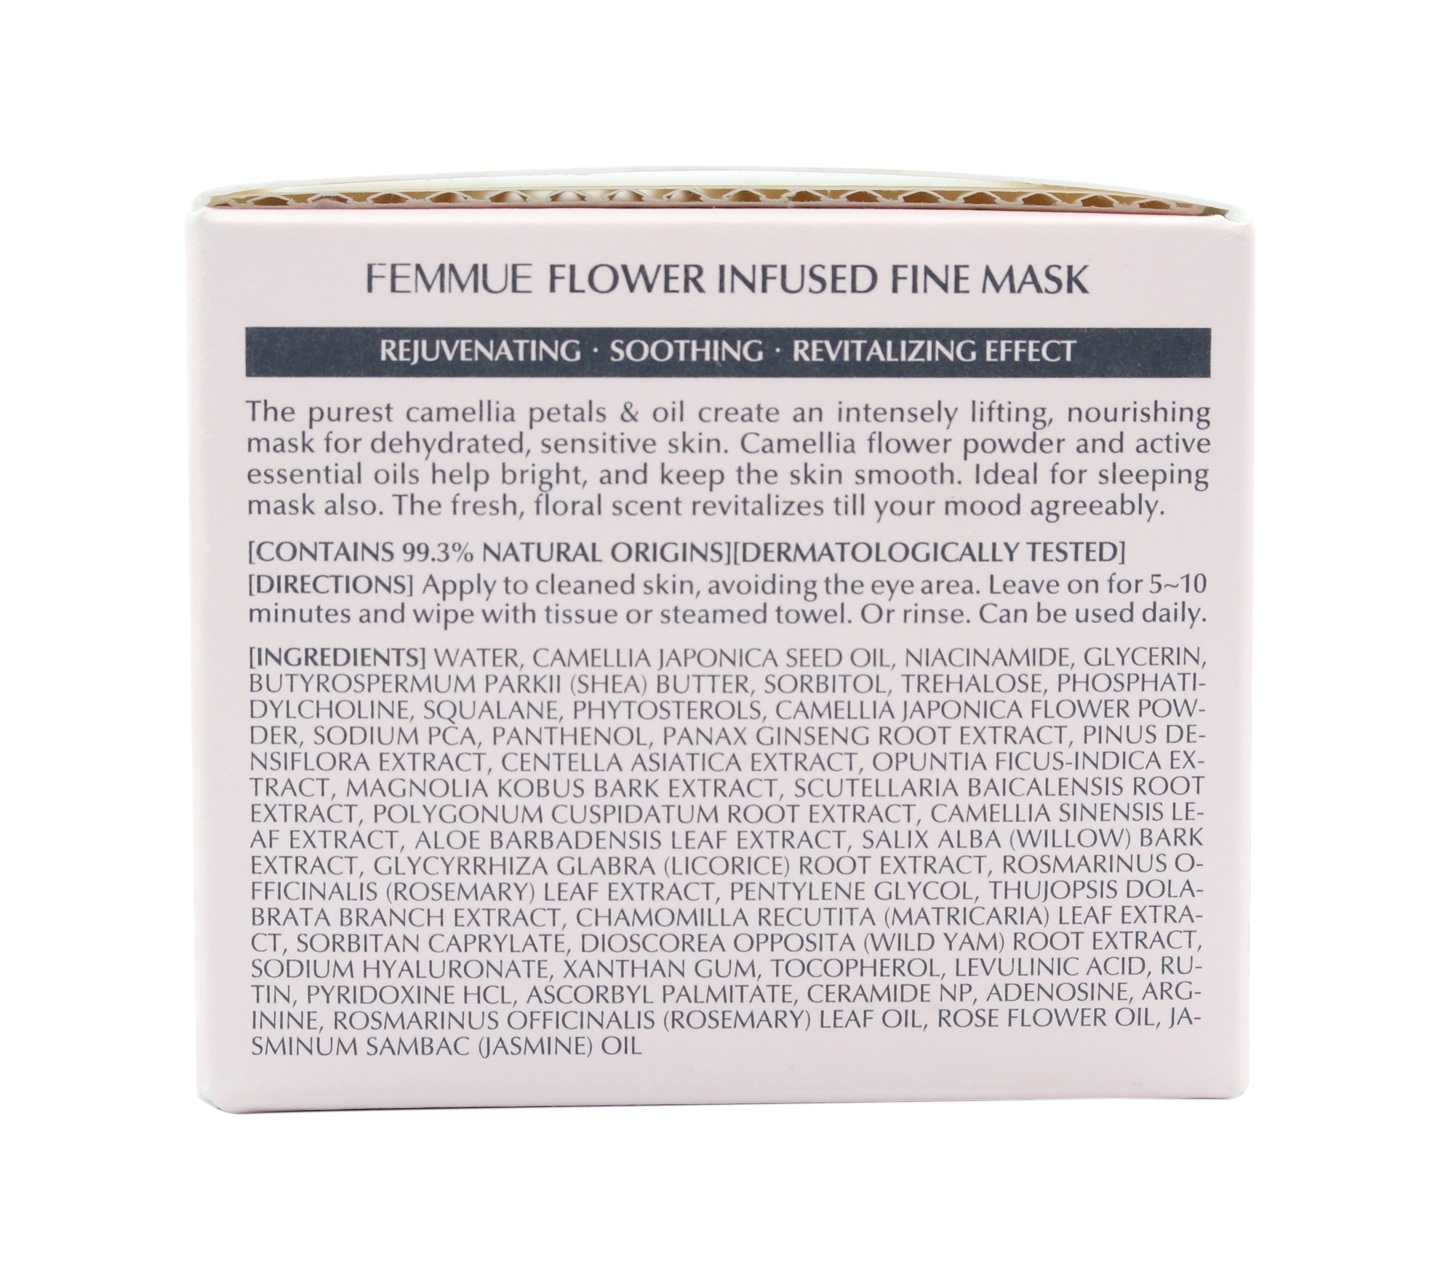 Femmue Flower Infused Fine Mask Skin Care